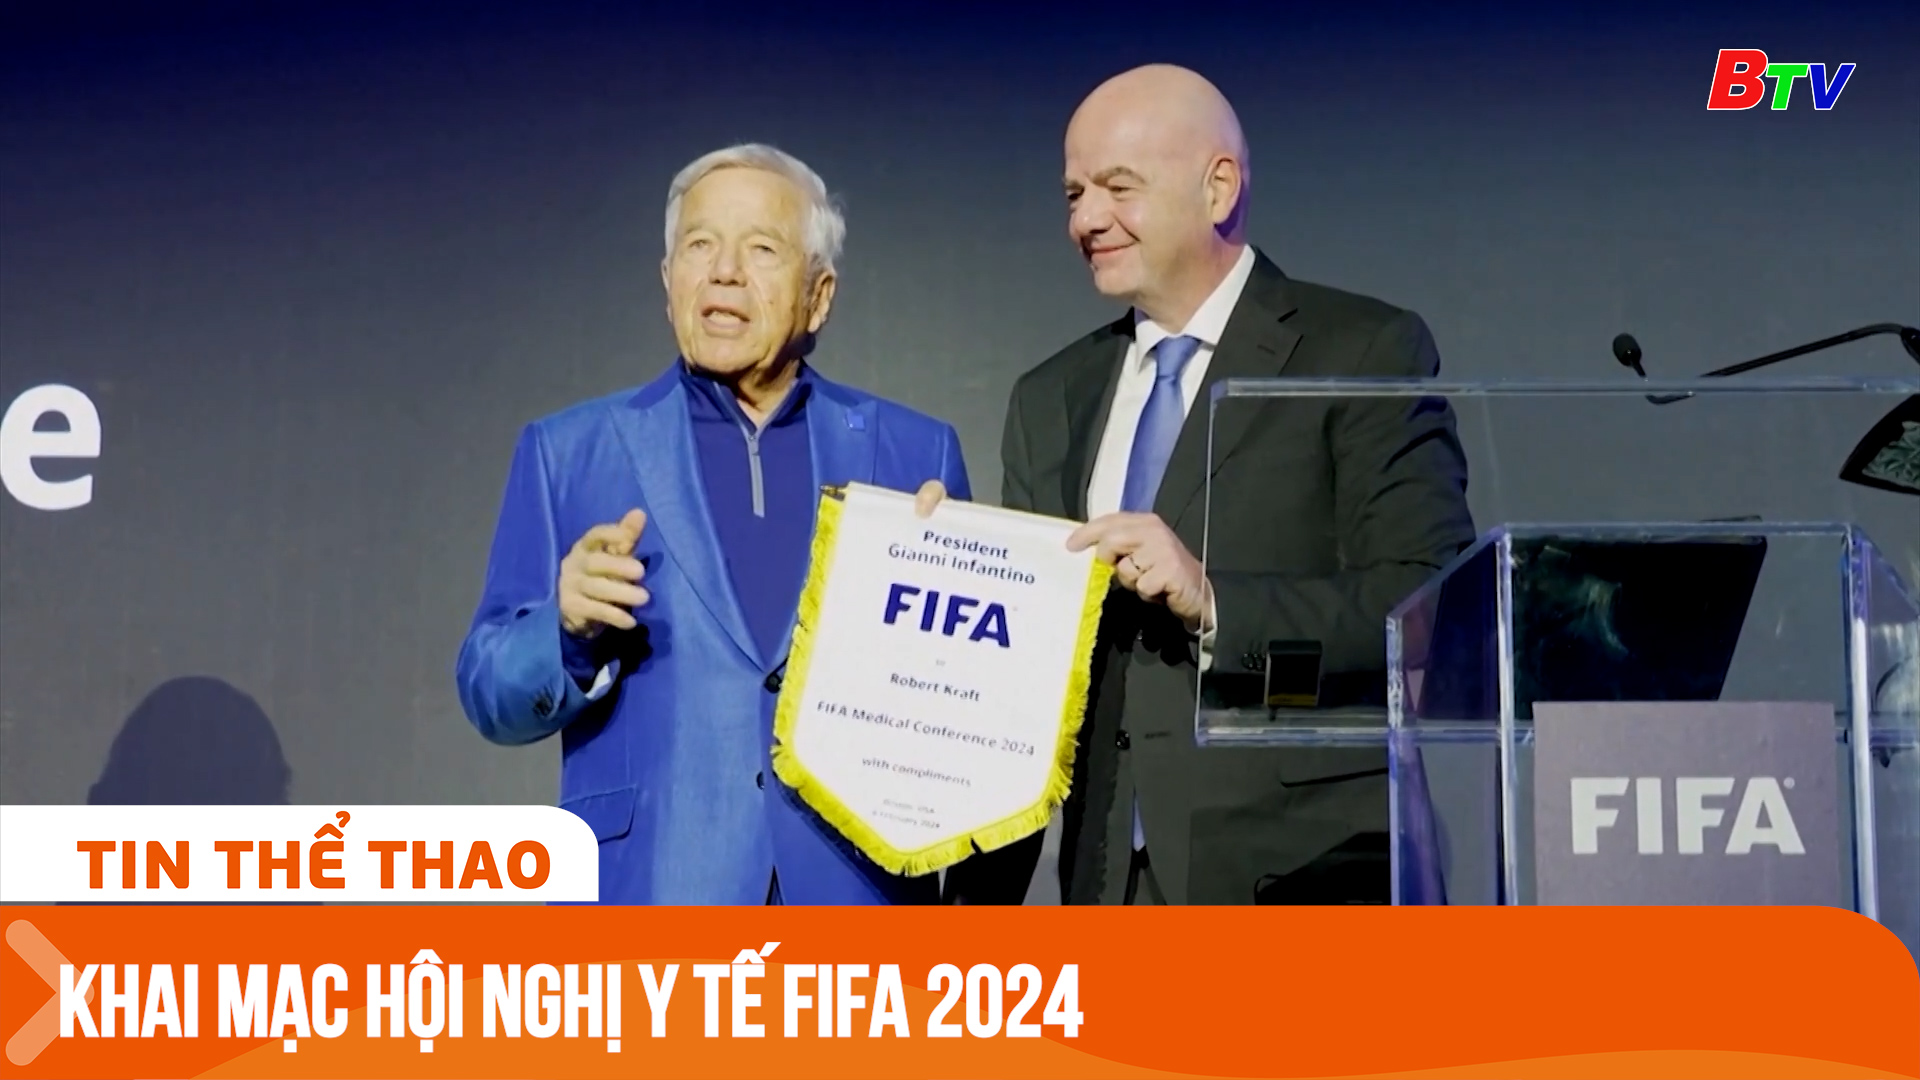 Khai mạc Hội nghị y tế FIFA 2024 | Tin Thể thao 24h	